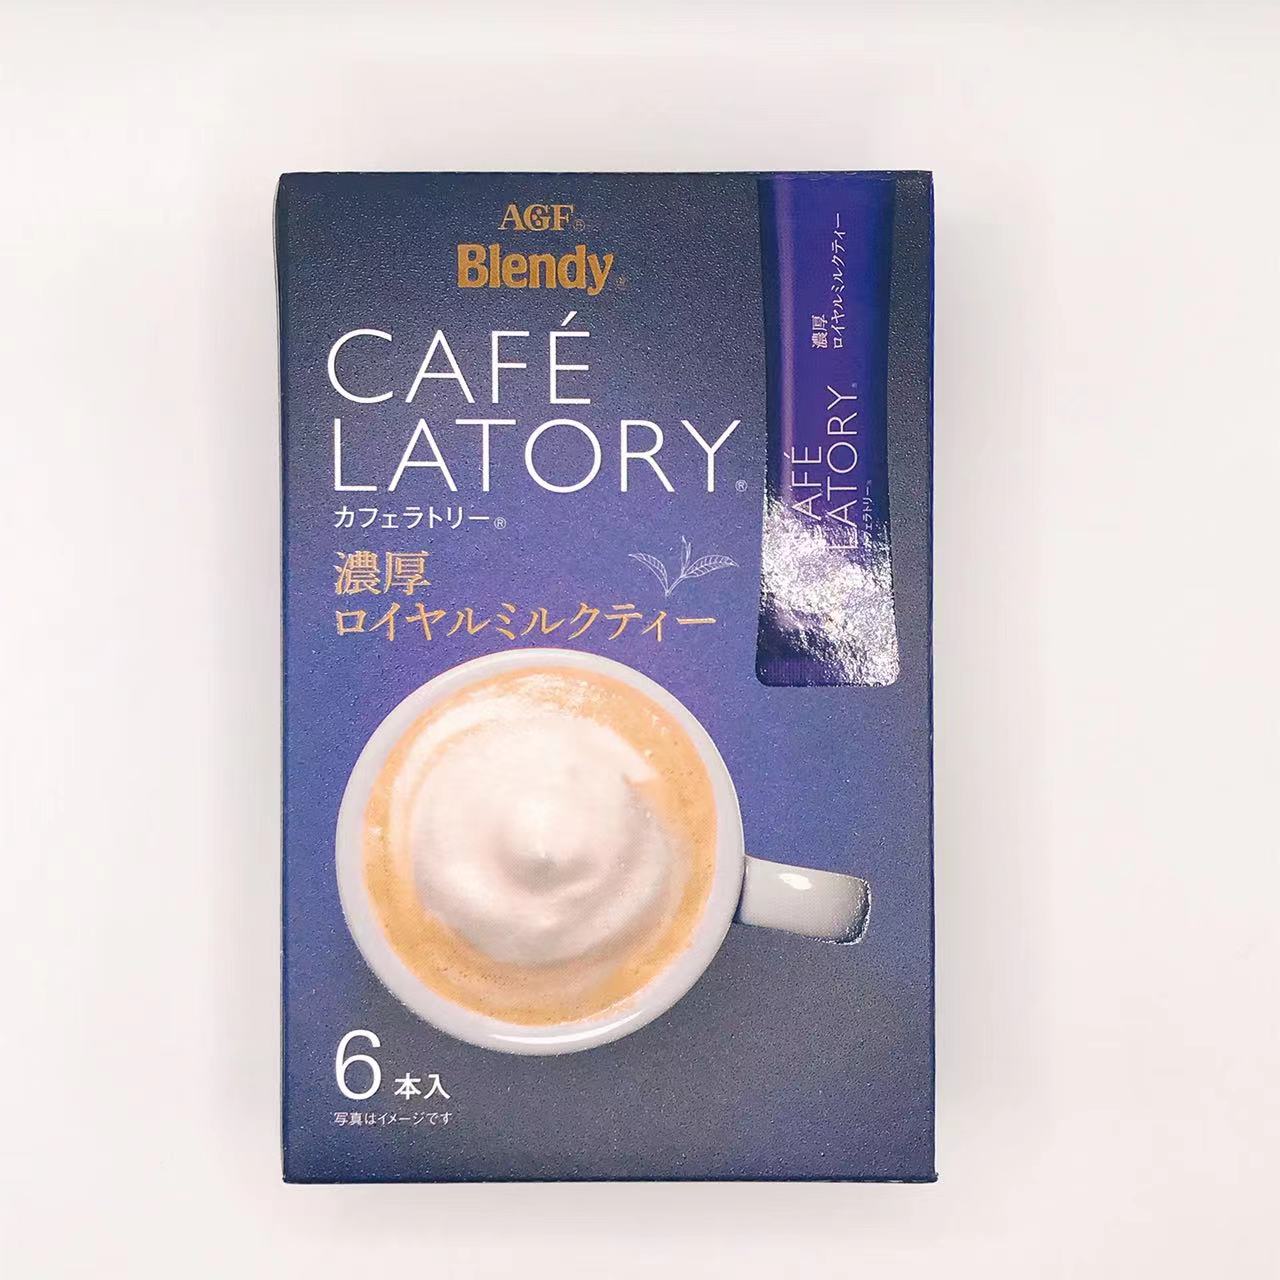 味之素AGF Blendy AGF Brendy Cafe Ratery Stick Coffee豐富的皇家奶茶（11G * 6）